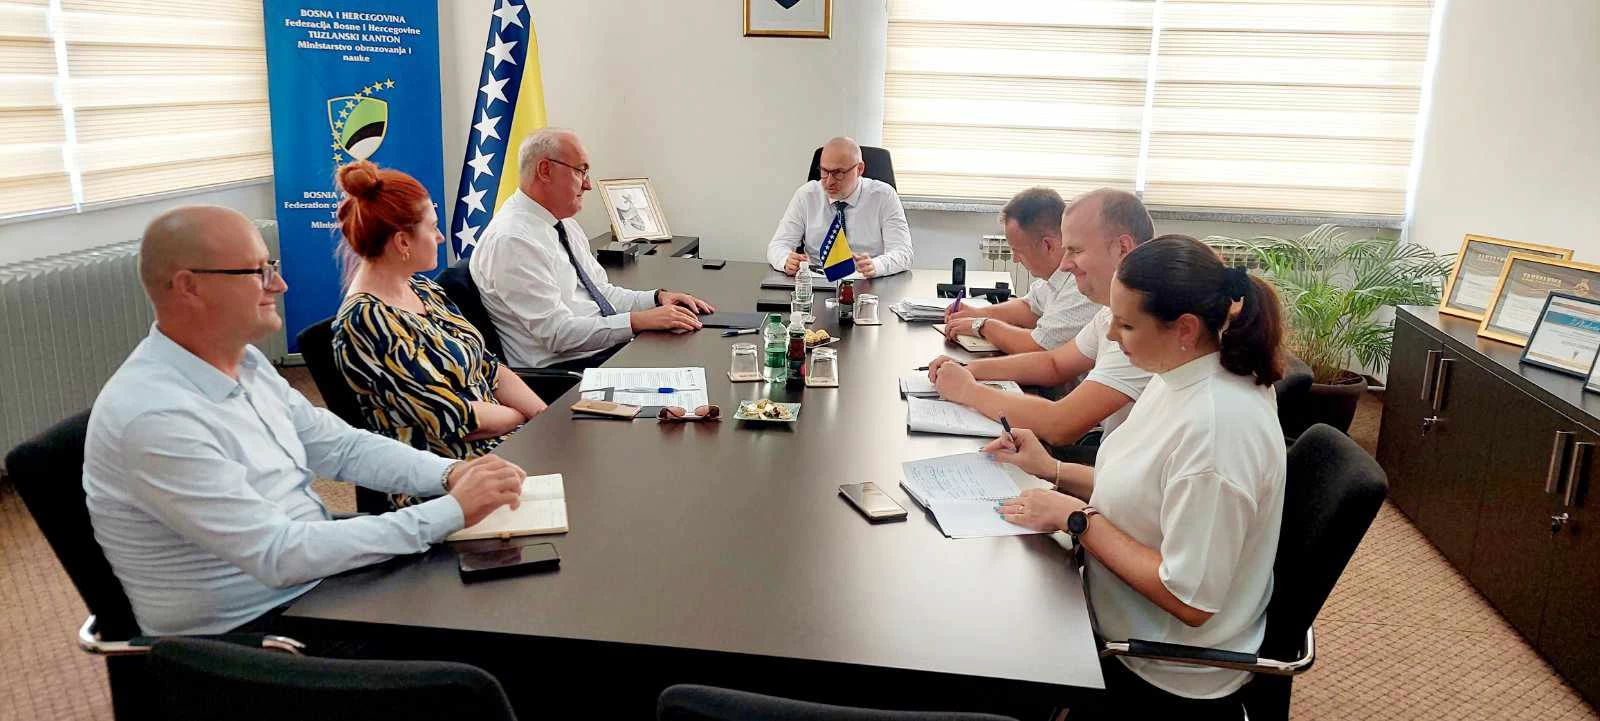 Pravilnik o uslovima, metodama i postupcima izvođenja praktične nastave tema sastanka u kabinetu ministra Omerovića